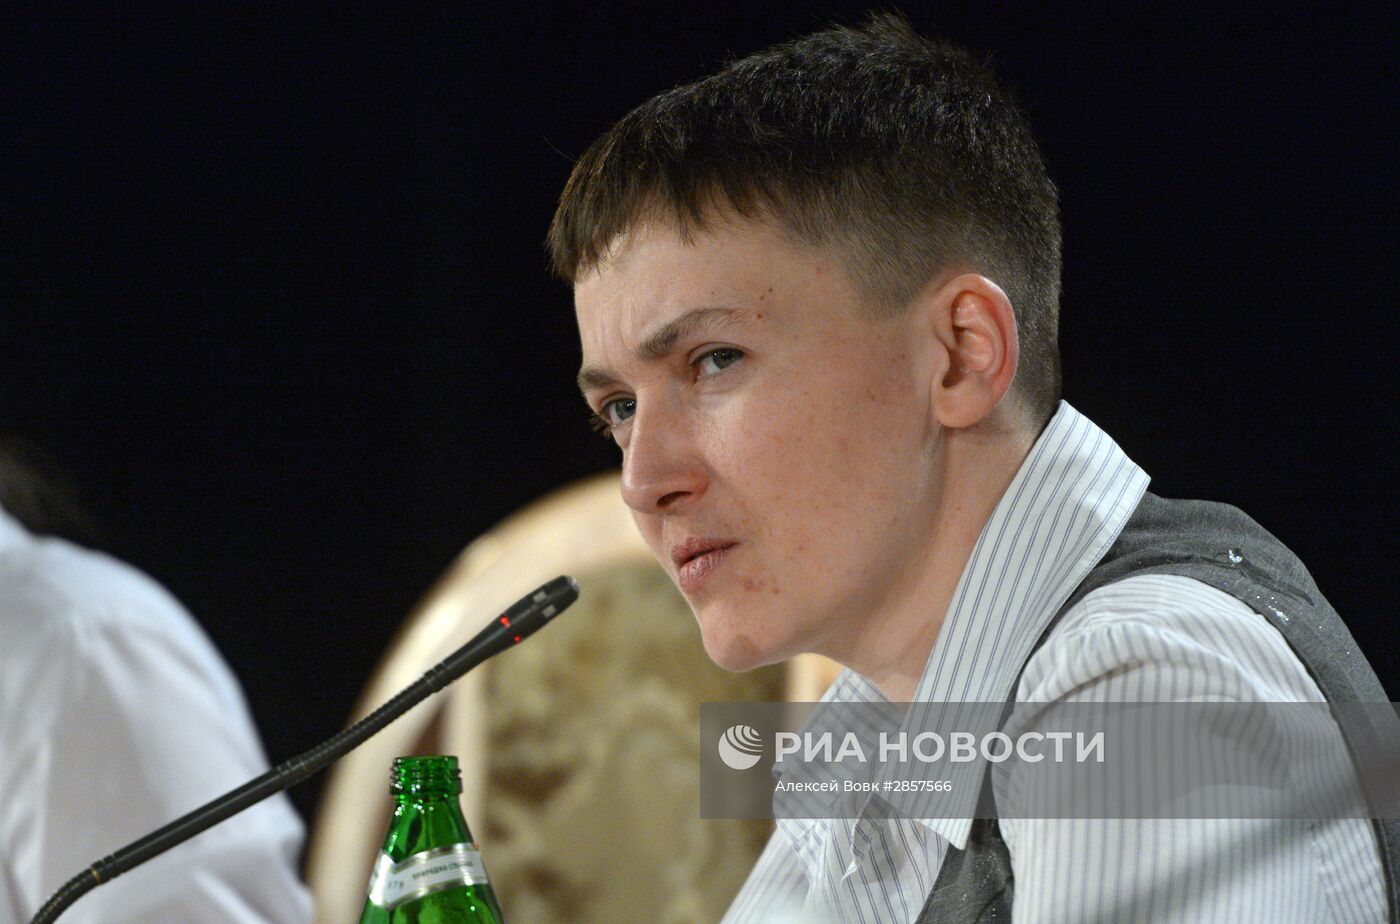 Пресс-конференция военнослужащей Надежды Савченко в Киеве